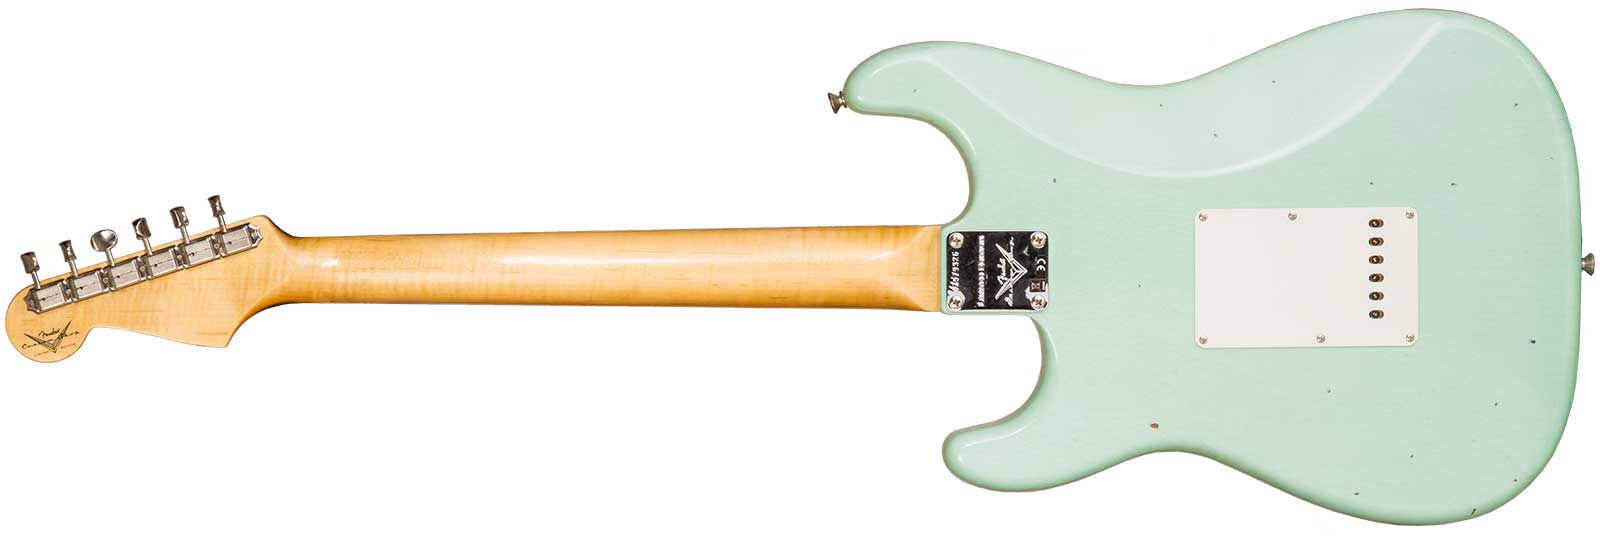 Fender Custom Shop Strat 1964 3s Trem Rw #cz579326 - Journey Man Relic Aged Surf Green - Elektrische gitaar in Str-vorm - Variation 2